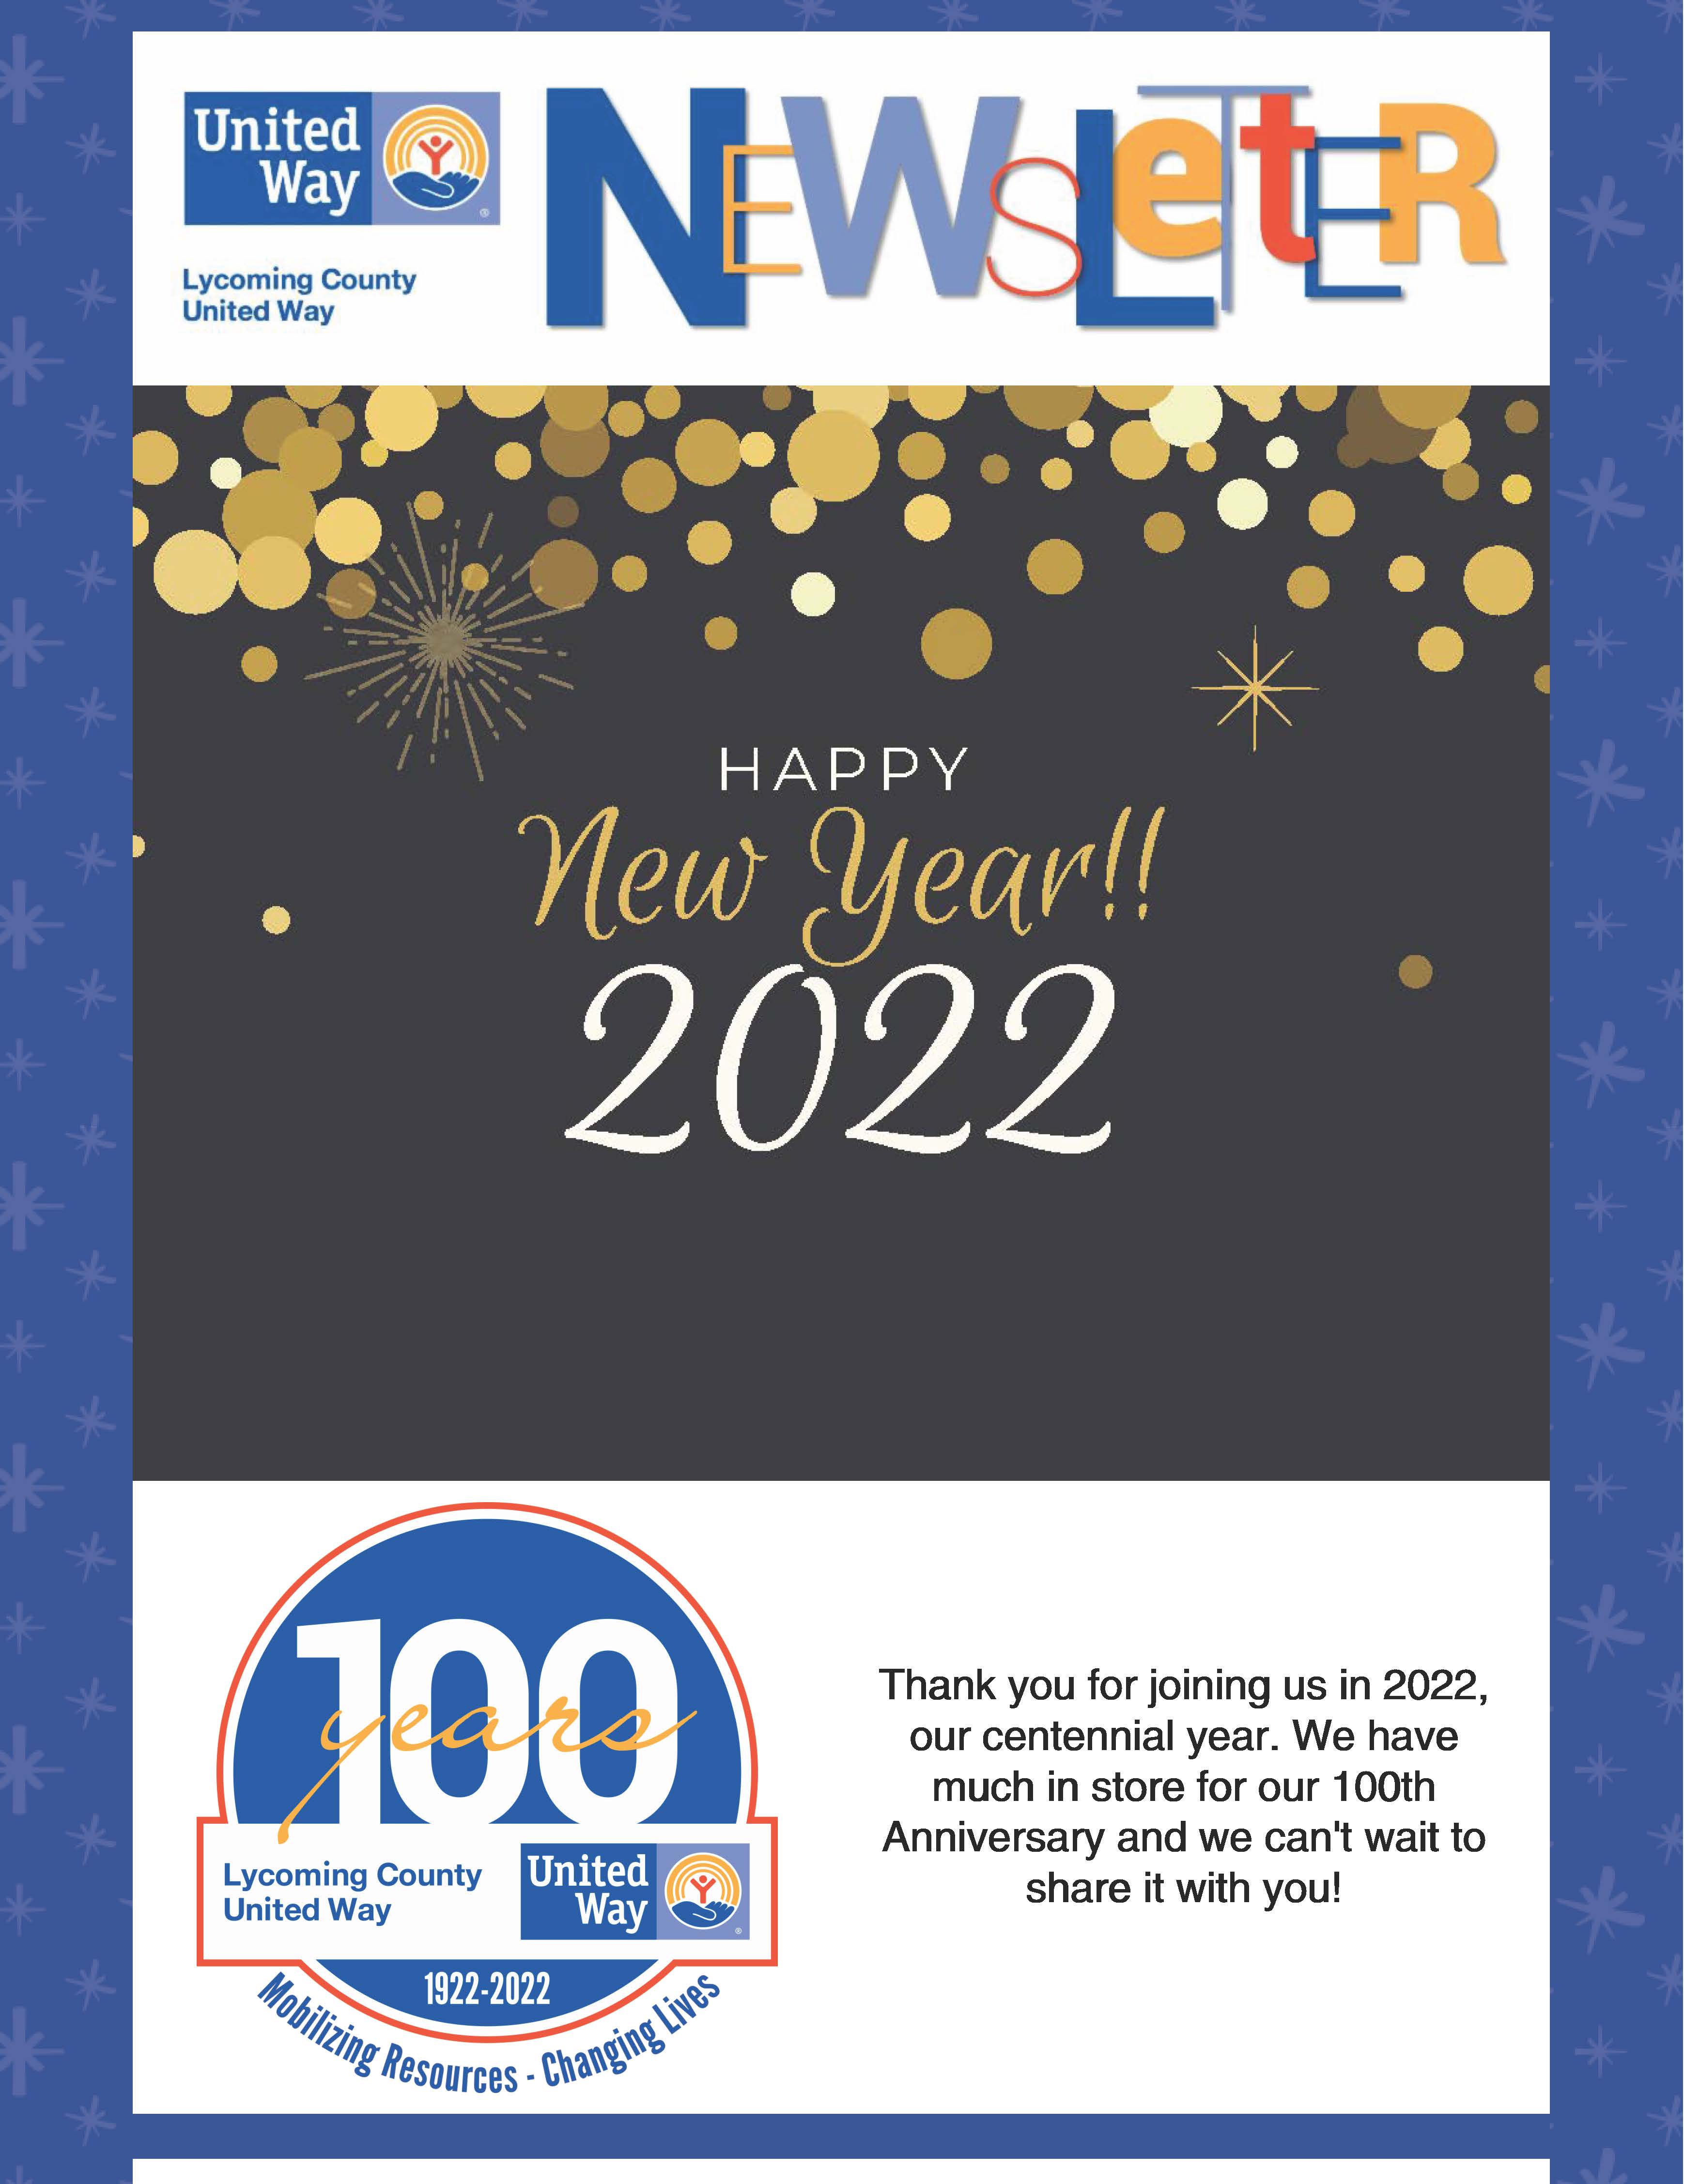 January 2022 Newsletter